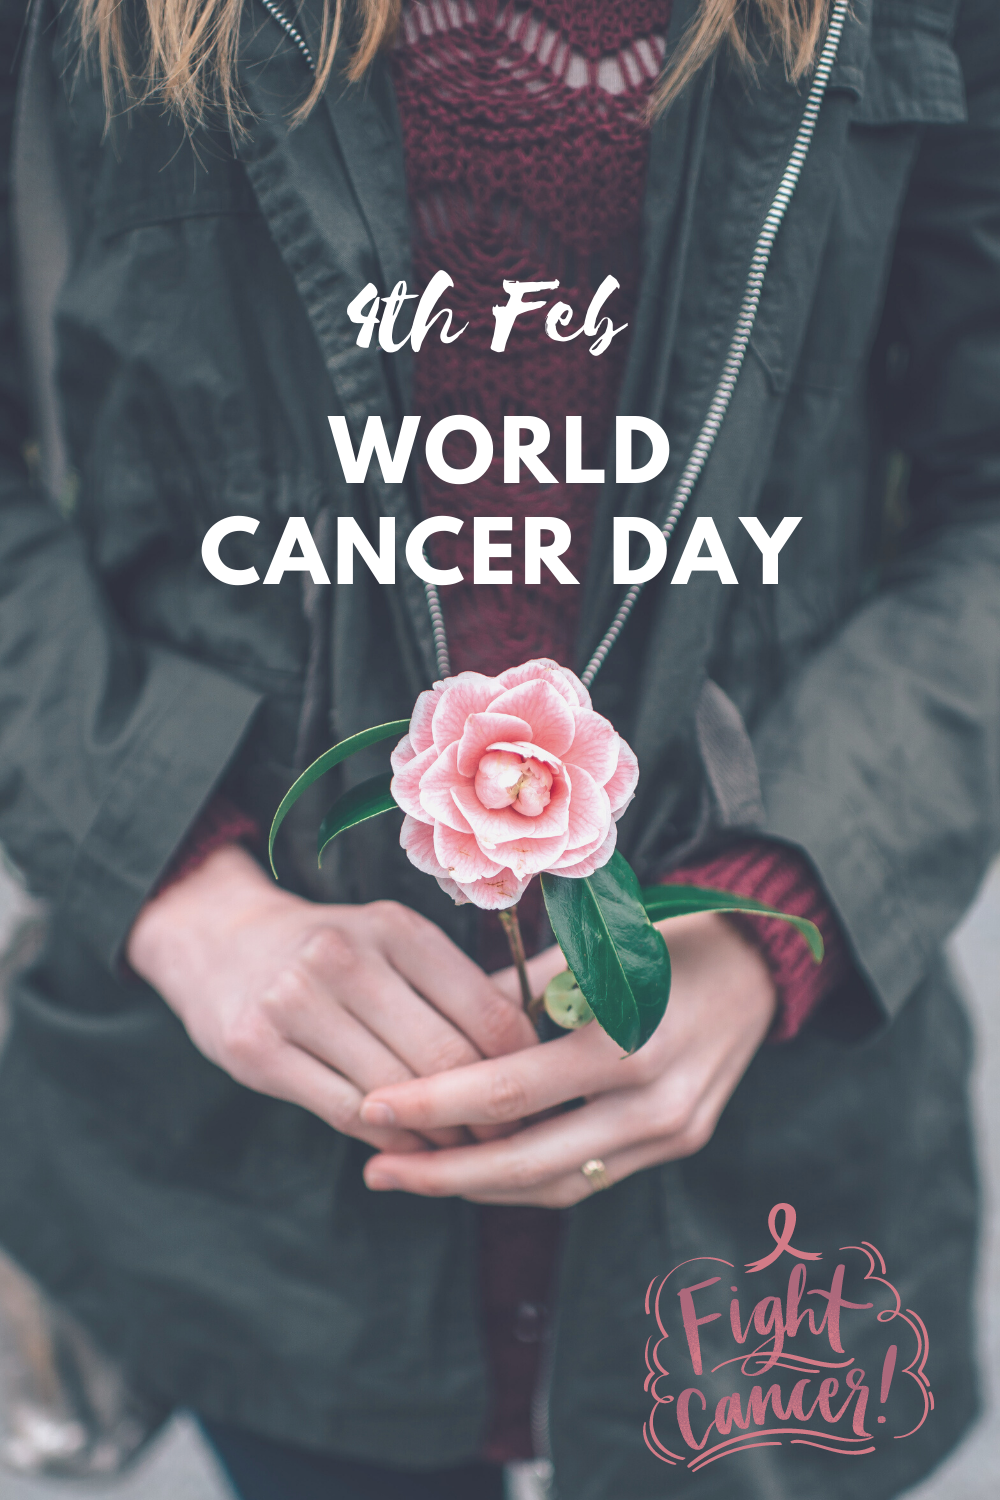 Cancer prevention – 7 steps to slash your cancer risk #WorldCancerDay